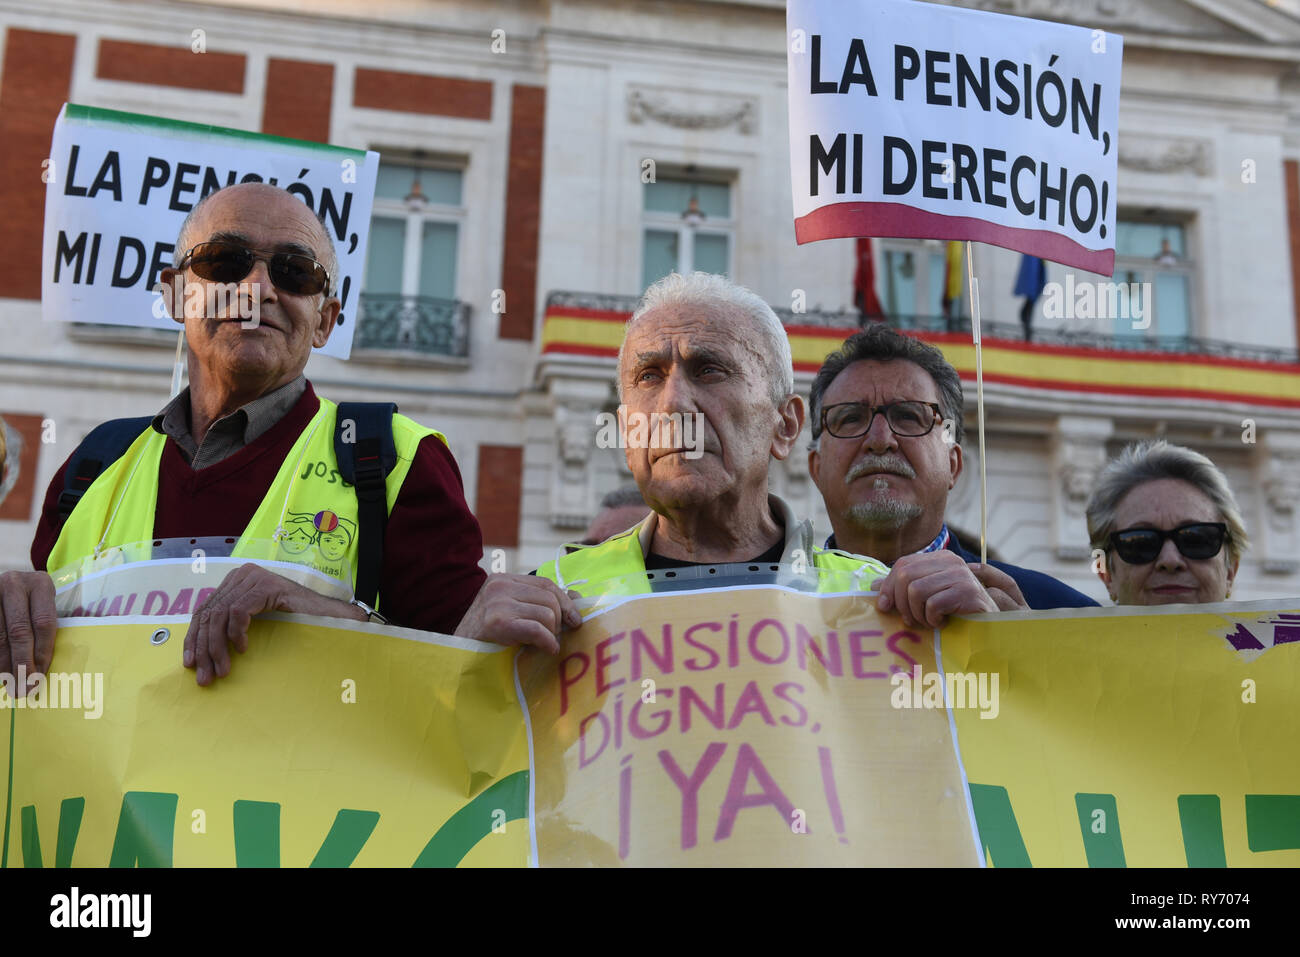 Les retraités ont vu la tenue des pancartes et une banderole pendant la manifestation. Près de 300 retraités se sont rassemblés à la Puerta del Sol à Madrid, le gouvernement espagnol exigeant une augmentation de leurs pensions et de protestation contre les coupures dans les services publics. Banque D'Images